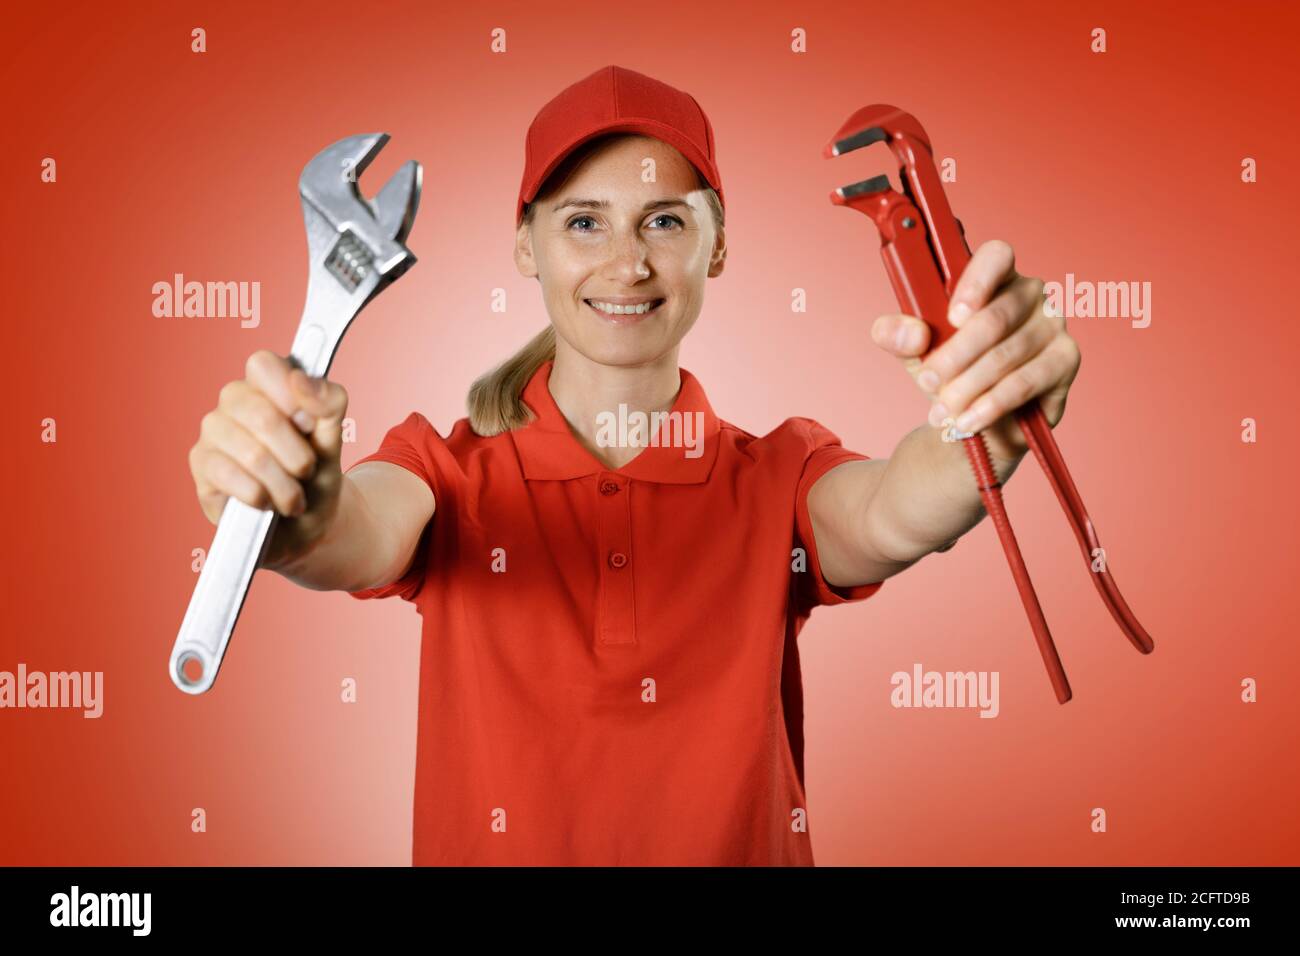 handyman services - donna maneggevole in uniforme rossa con riparazione strumenti in mani su sfondo rosso Foto Stock